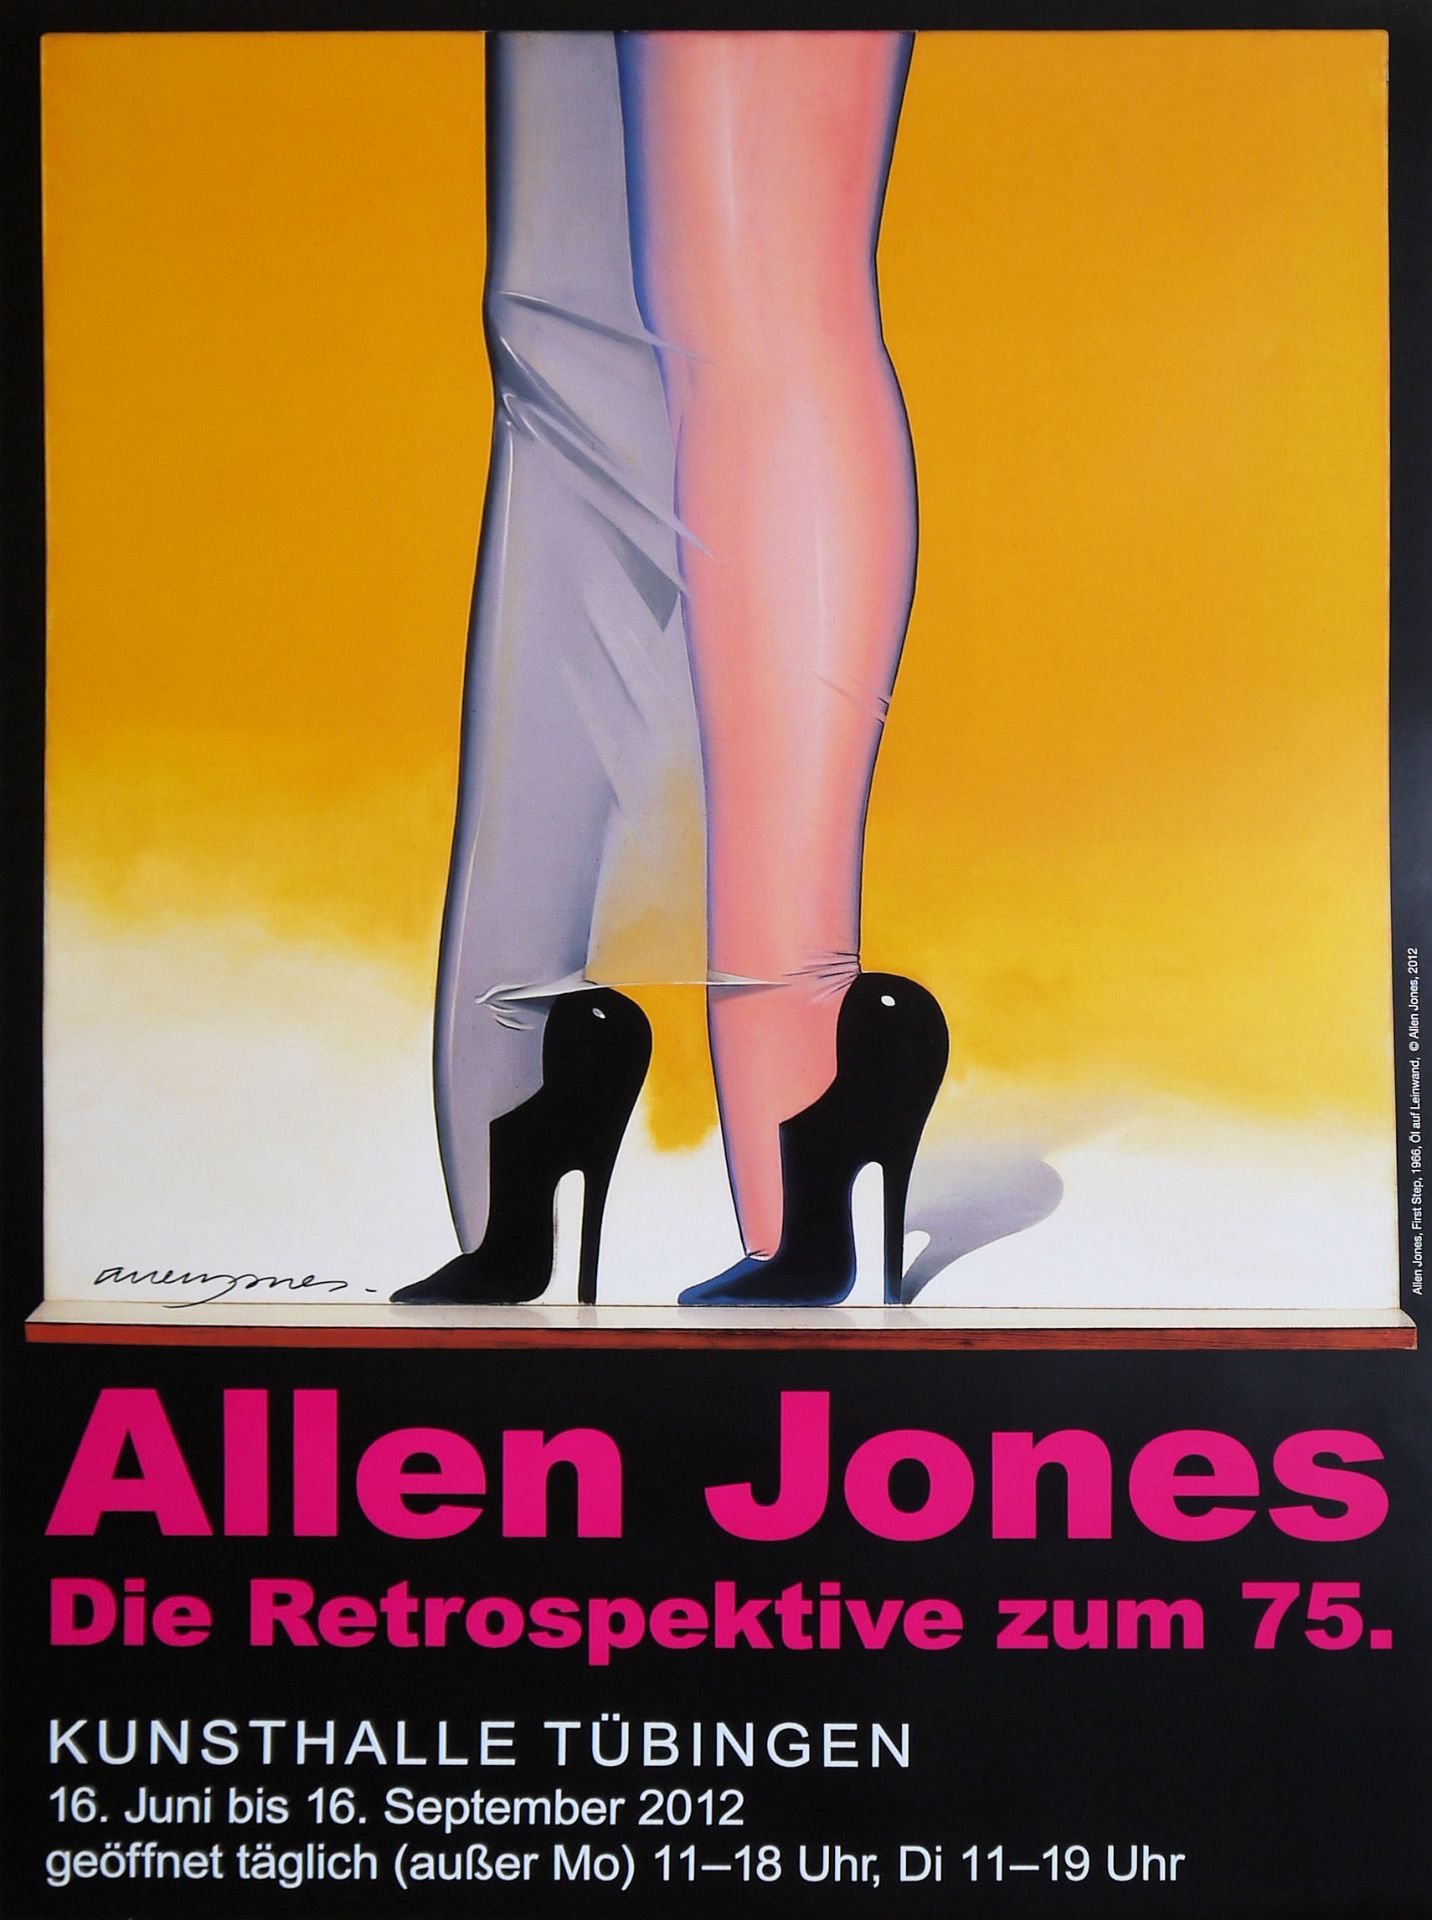 Allen Jones, Pop Art, bundle of 5 signed exhibition posters - Image 3 of 5